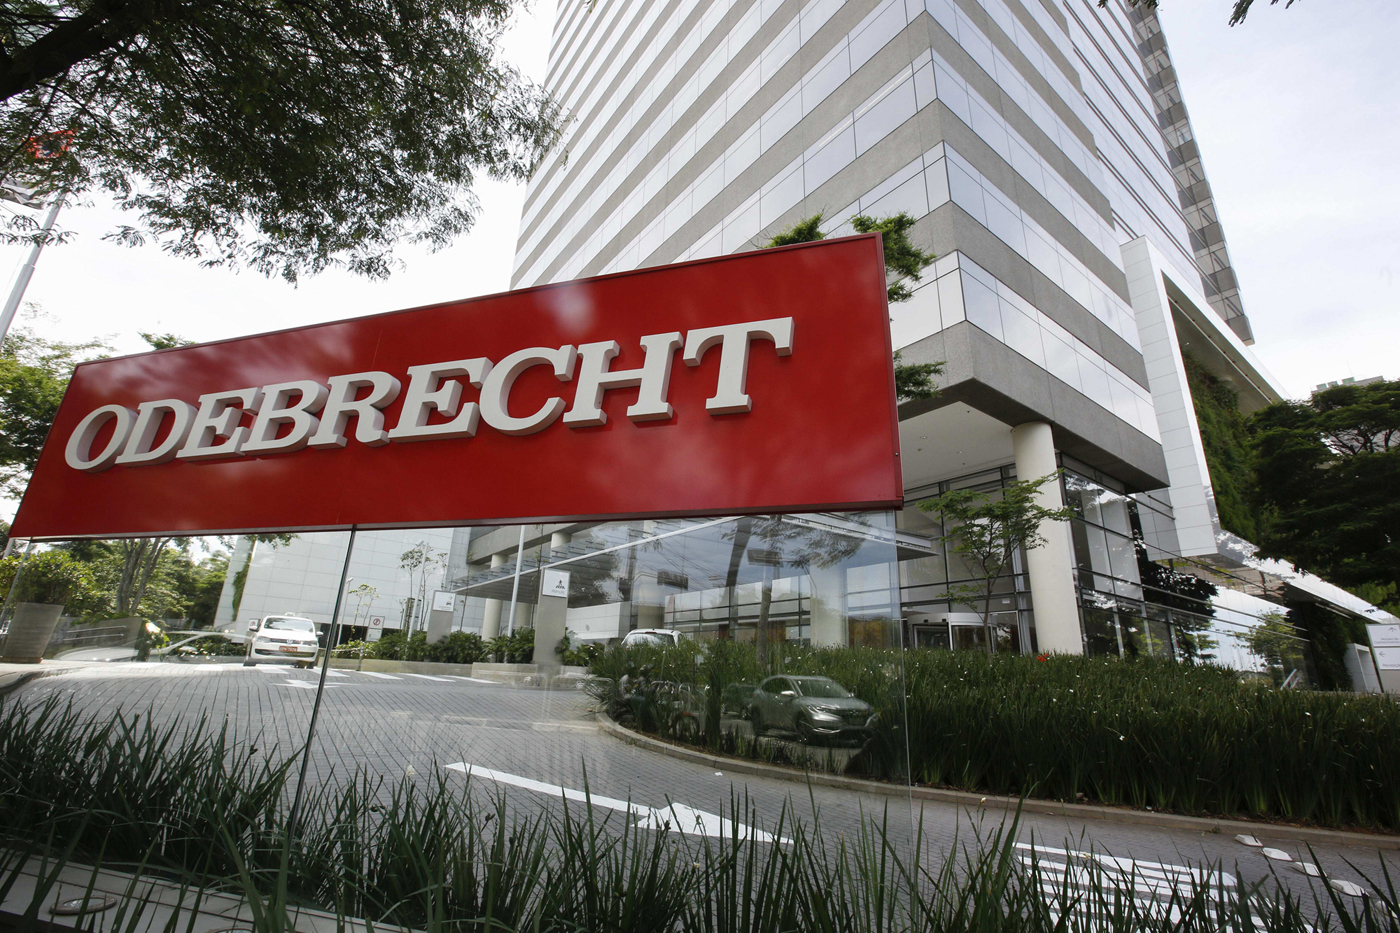 Odebrecht paga 131 millones de dólares por deuda tributaria en Perú